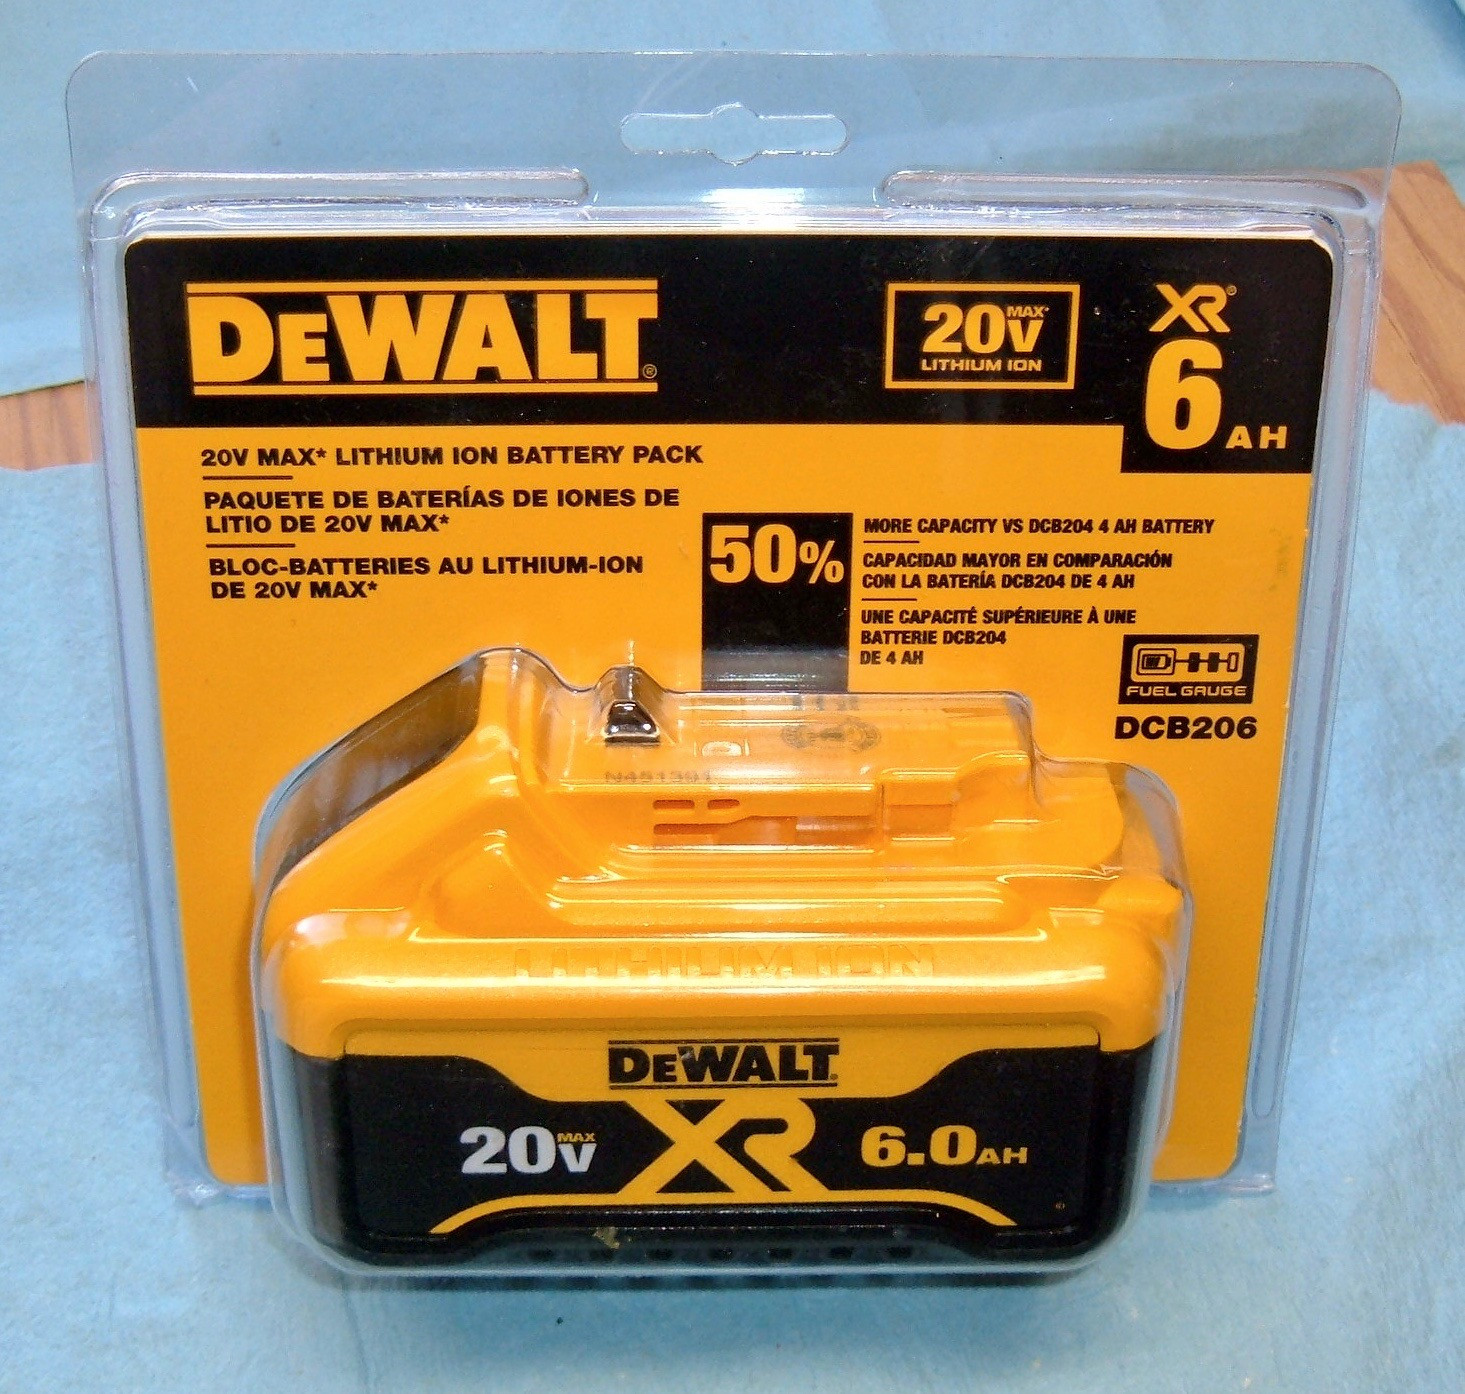 DEWALT 20 V MAX XR 5.0 AH Paquete de 2 baterías